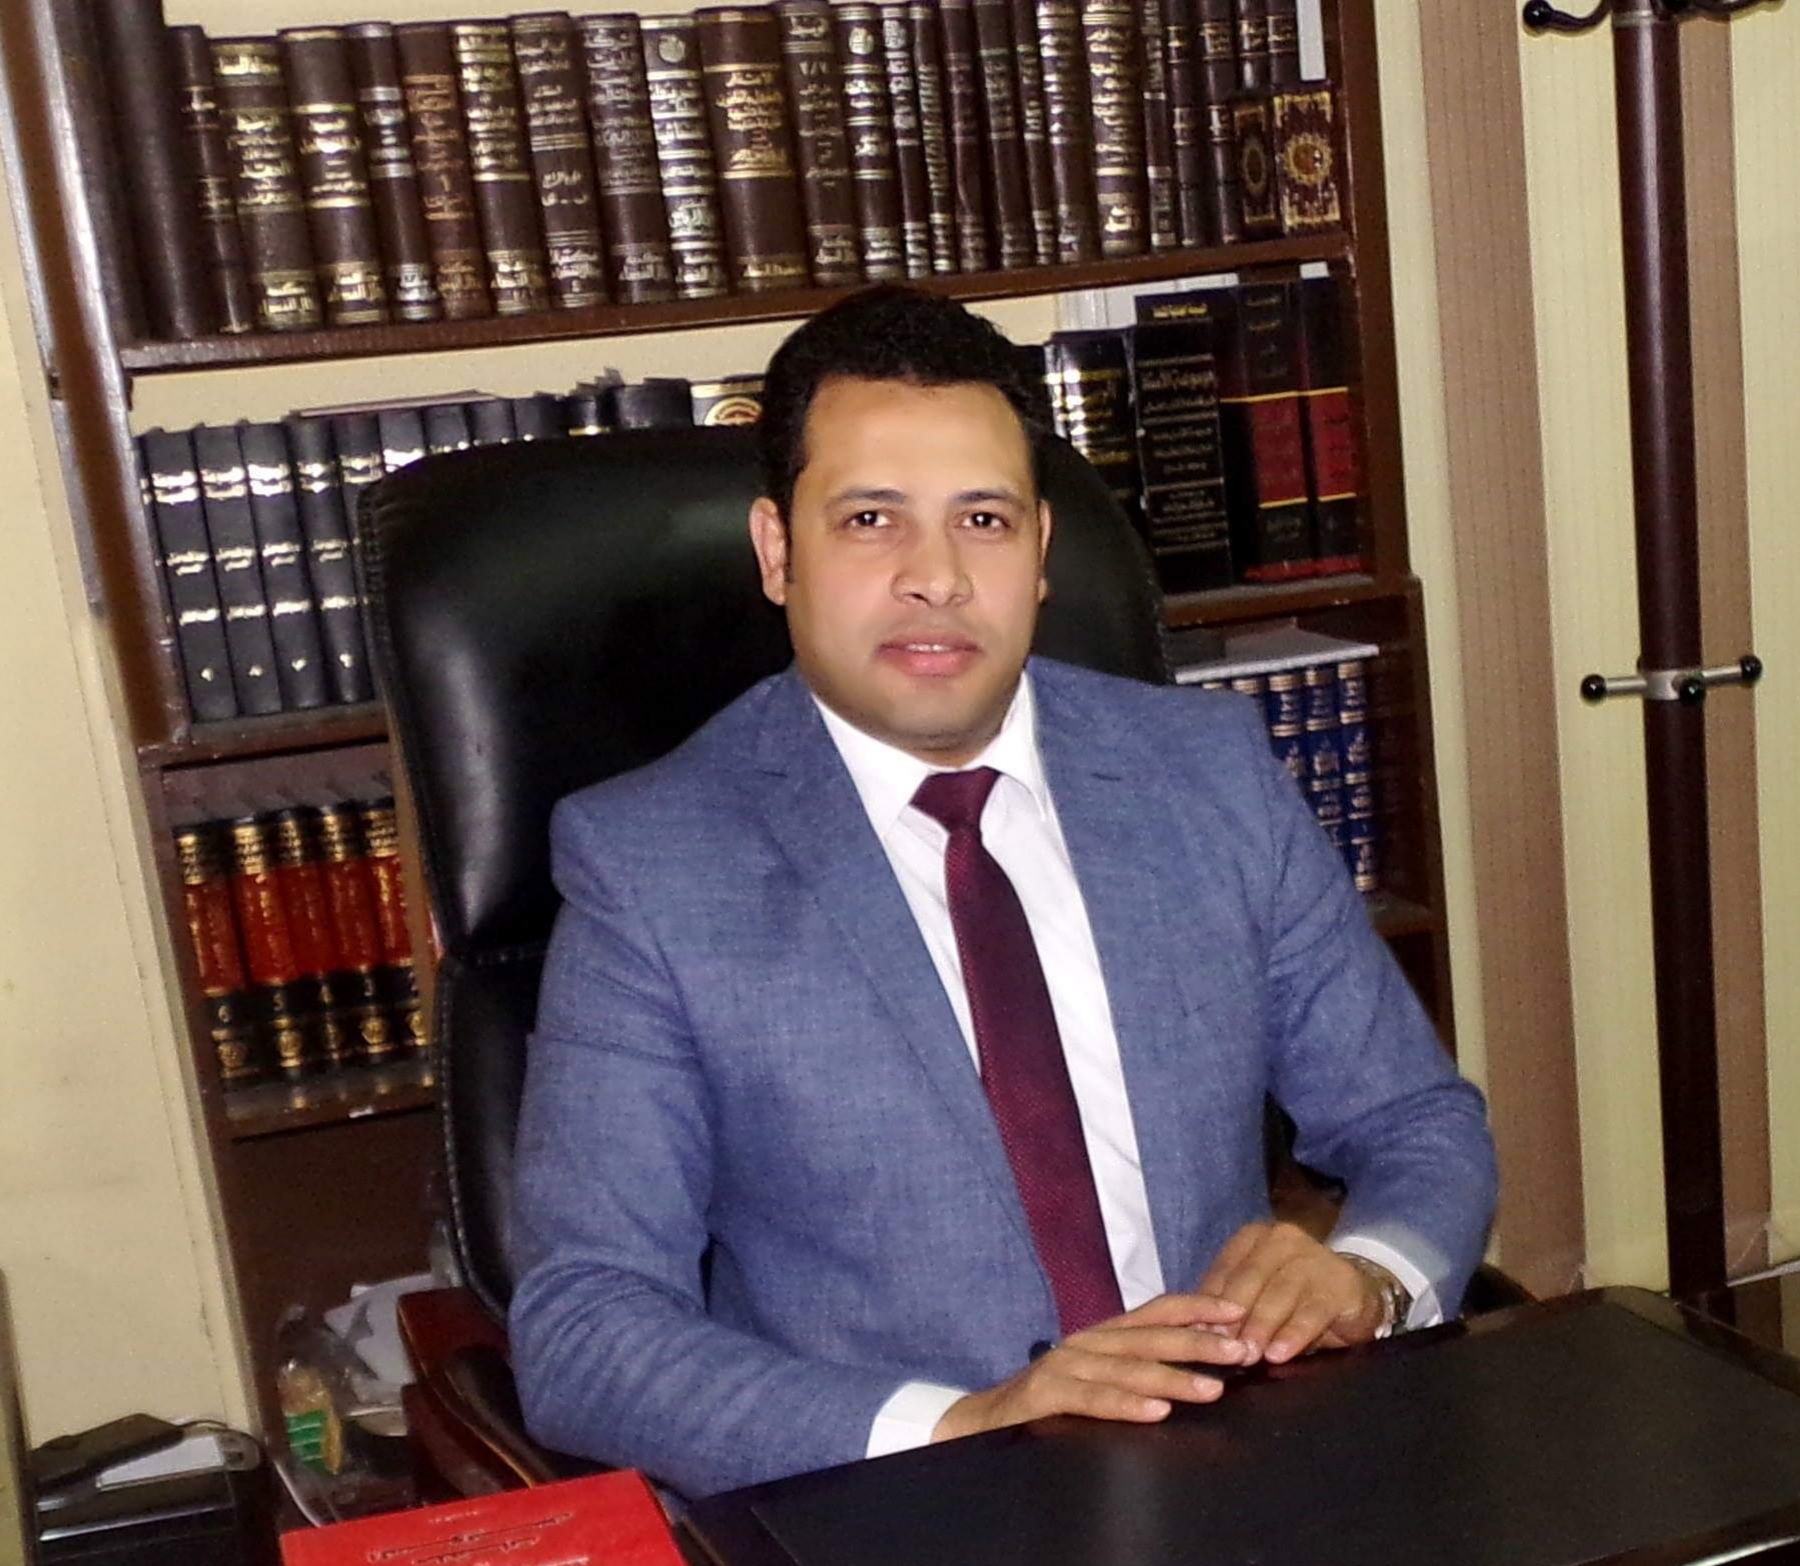 المستشار ياسين عبدالمنعم يكتب: غلبتني قناعتي القانونية على قناعتي السياسية